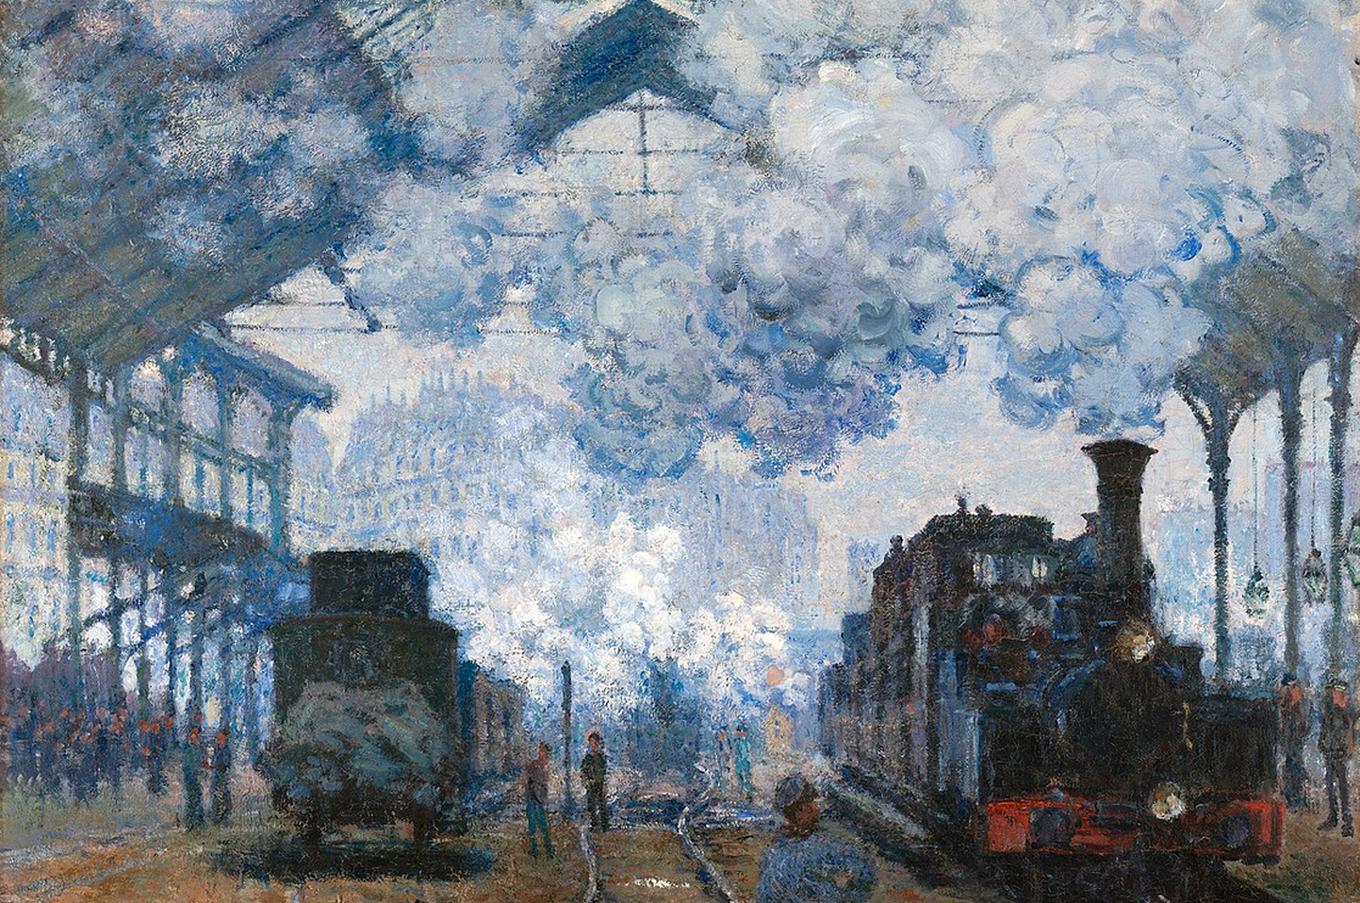 La estación Saint-Lazare, llegada de un tren. Claude Monet, 1877. 